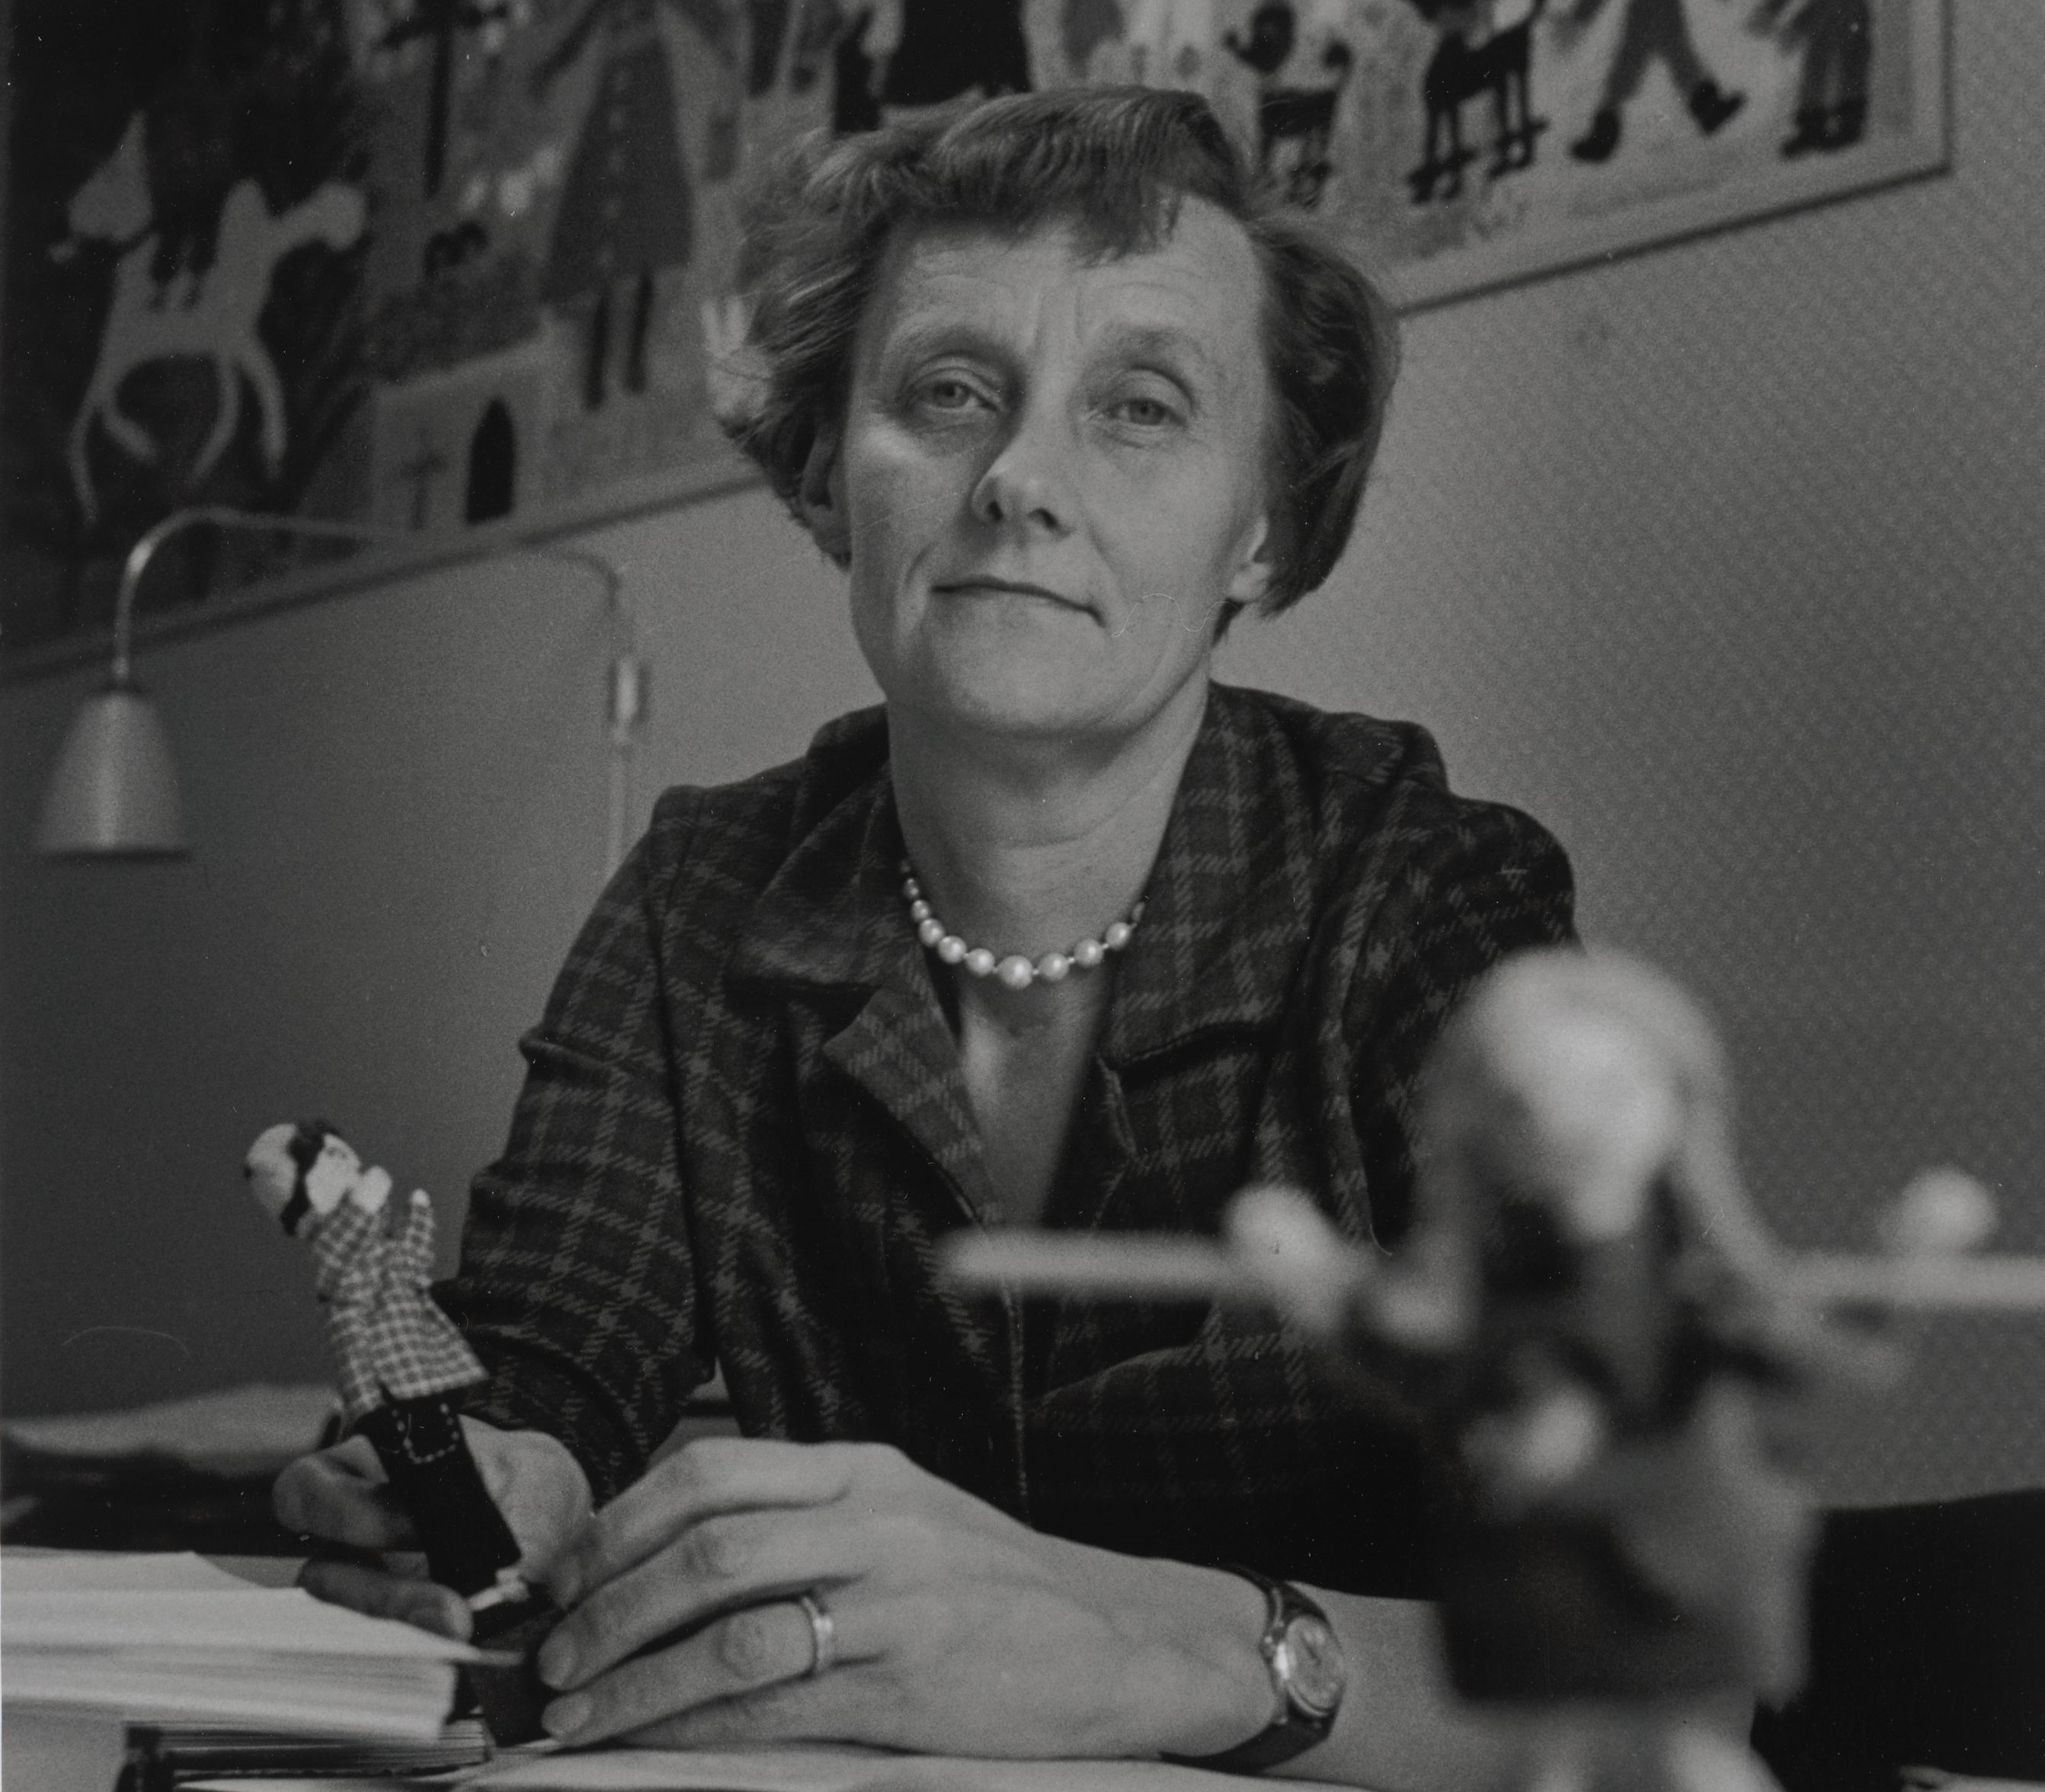 Svartvitt fotografi av Astrid Lindgren som sitter vid ett skrivbord. I ena handen håller hon en docka som ser ut som Emil i Lönneberga, i bildens förgrund skymtar en docka som ser ut som Pippi Långstrump.